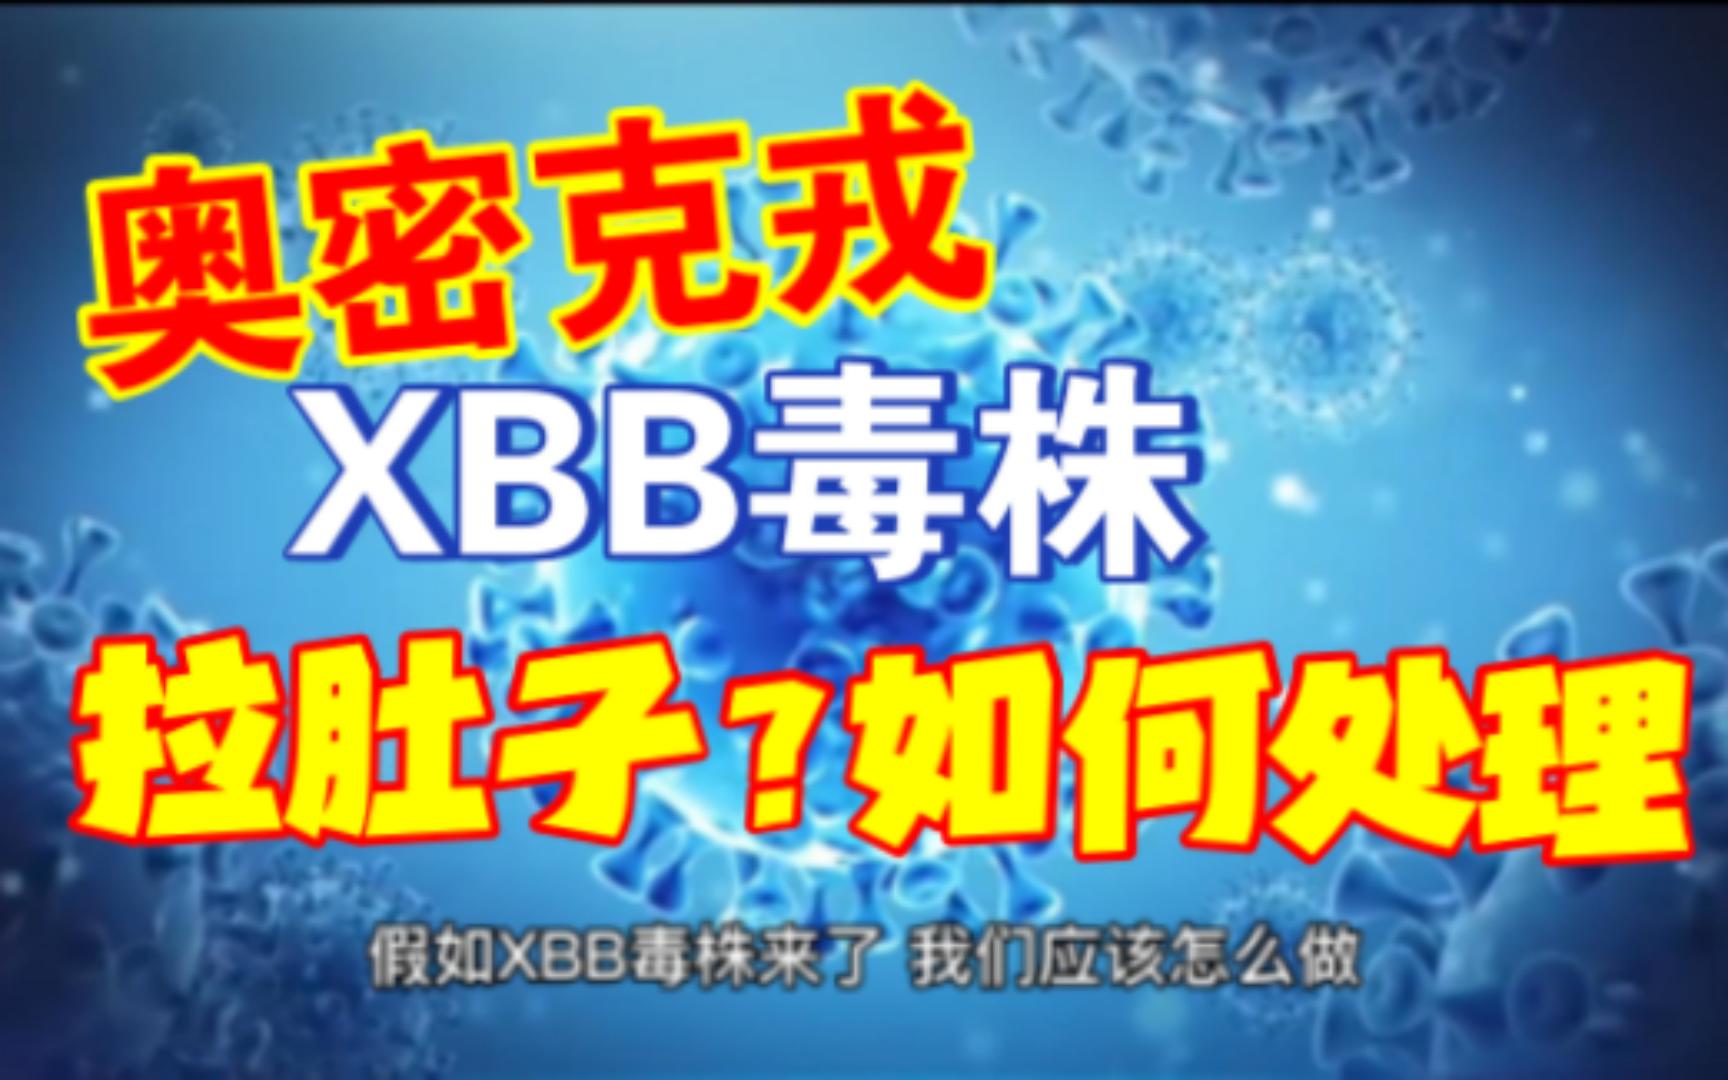 #上海已经监测到新毒株XBB.1.5传入#登微博热搜，XBB突变株来了？上海官方回应：尚未在社会面造成本土传播-新闻频道-和讯网